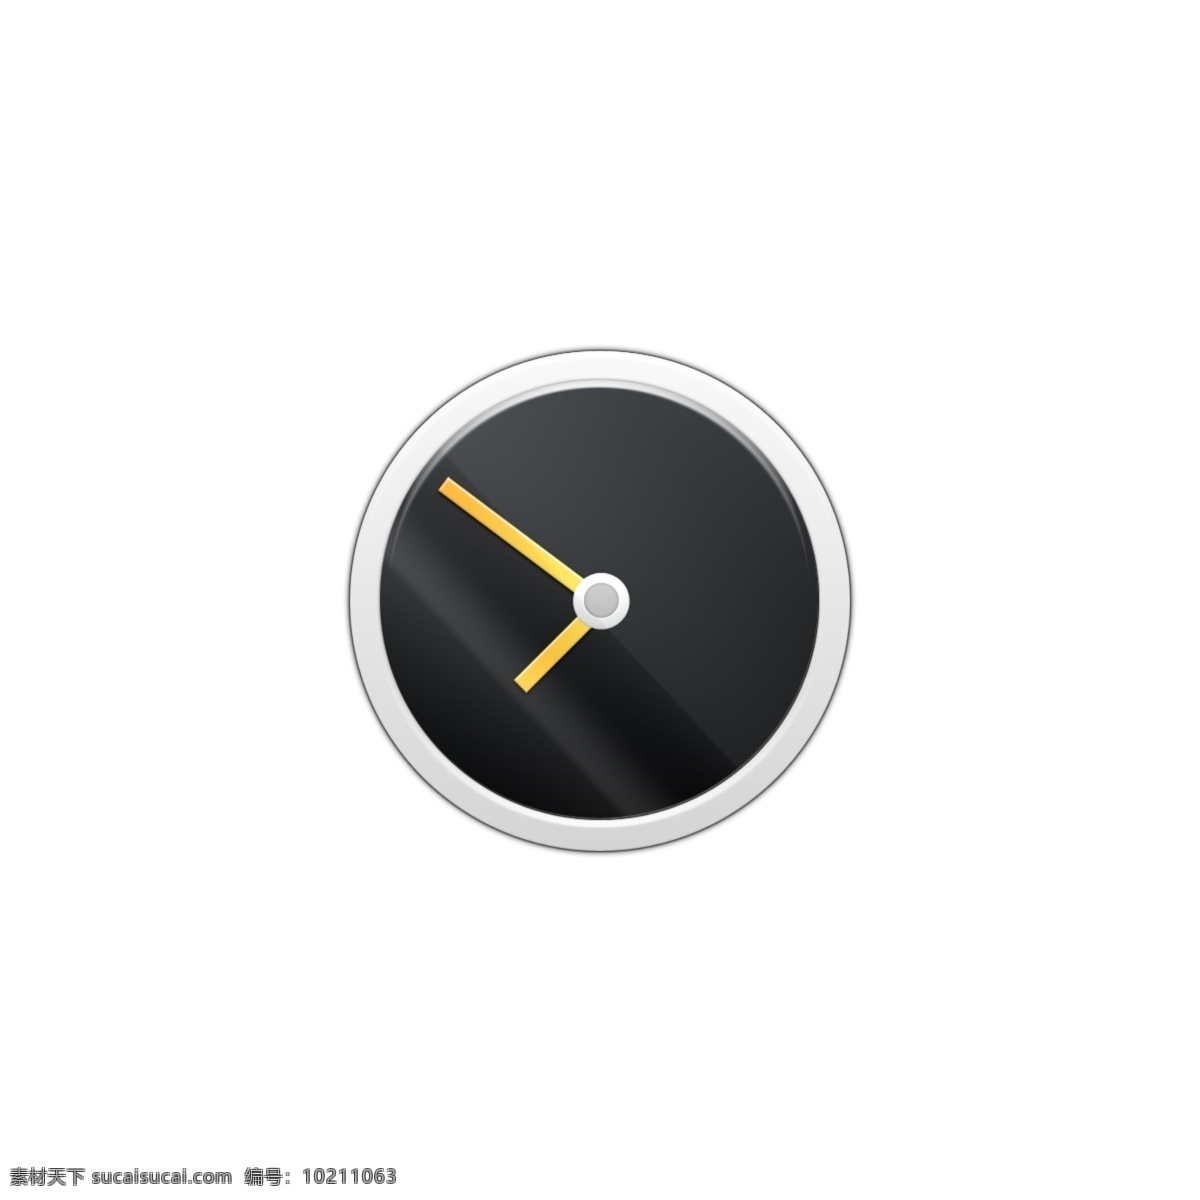 白色 式 悬挂 时钟 icon 图标 网页图标 icon图标 时钟图标 时钟图标设计 时钟icon 钟表图标 钟表 白色日历 悬挂闹钟 钟表时钟